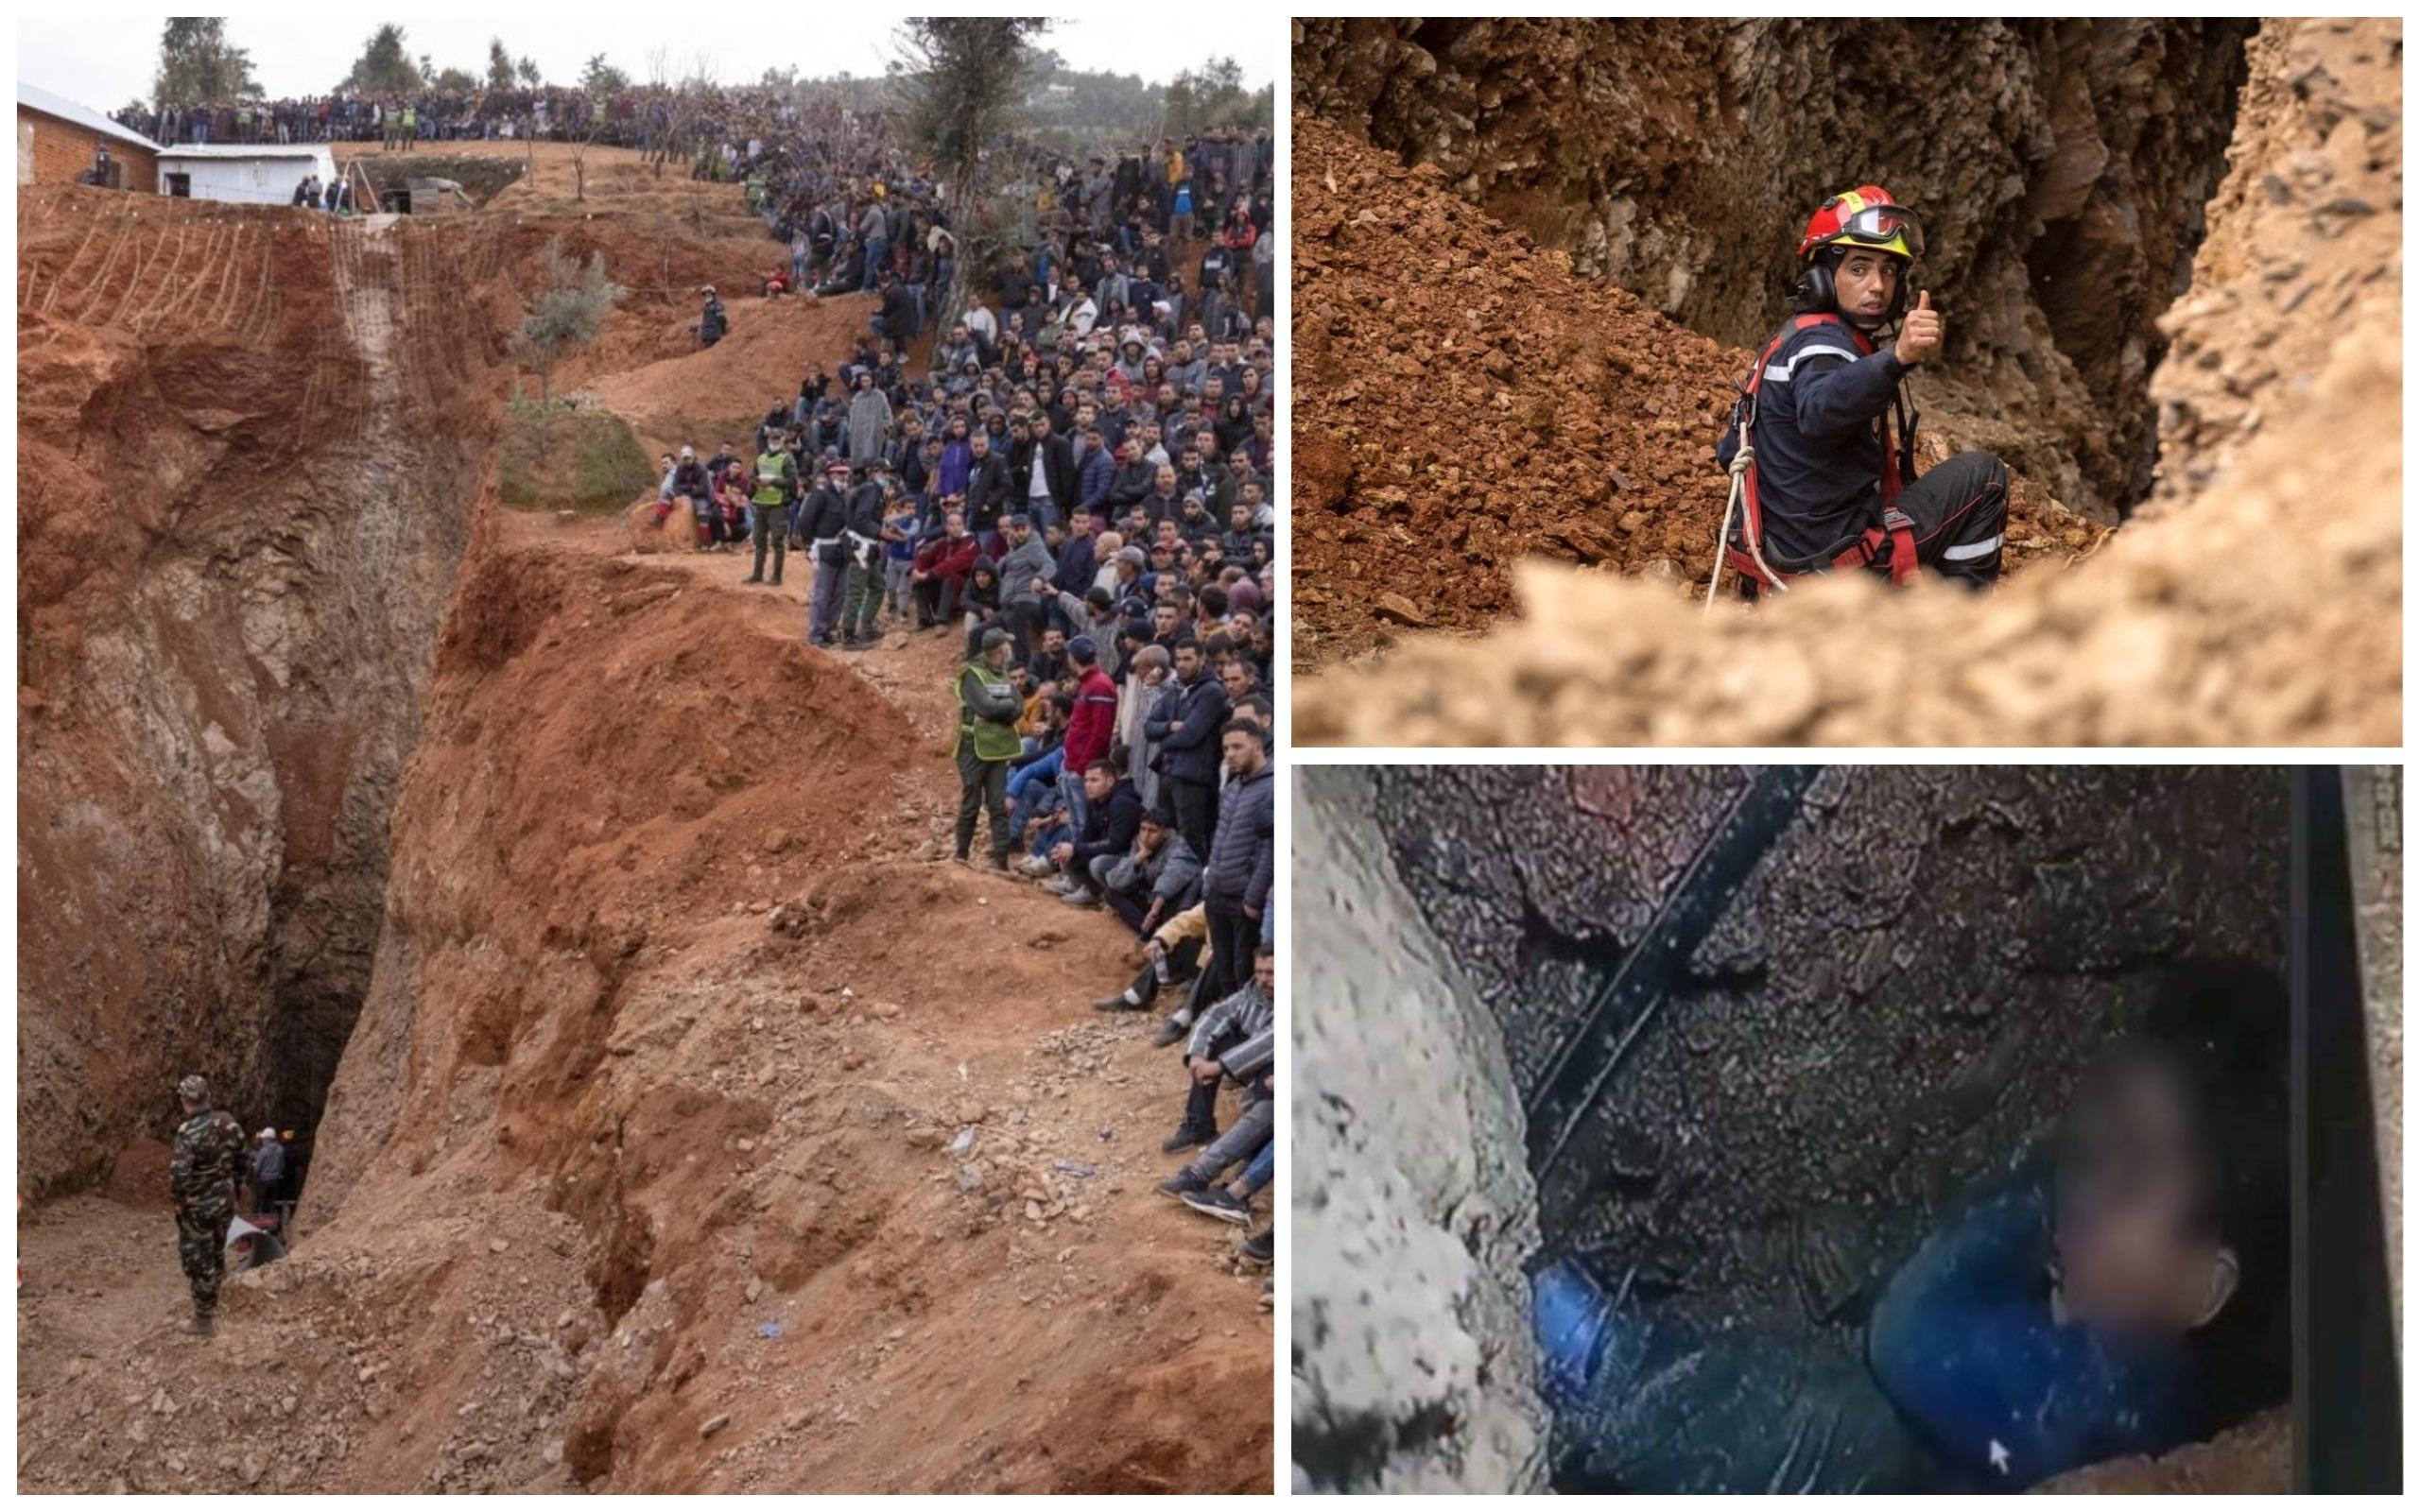 ”Aproape am ajuns”. Operațiunea de salvare a copilului de 5 ani, căzut în fântână, în Maroc, a intrat în linie dreaptă